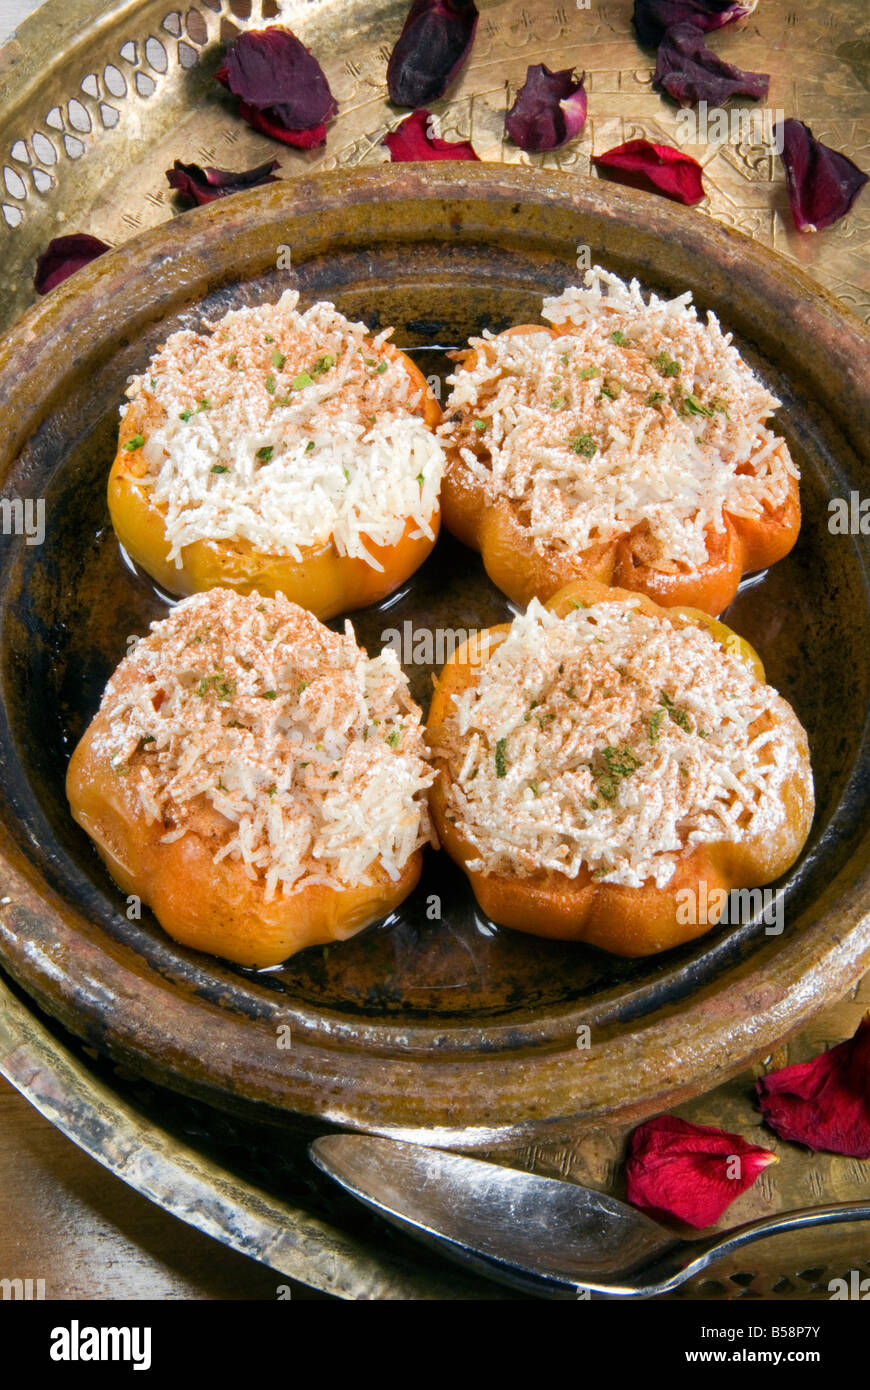 Arabe, les tomates avec du riz cuit dans le four, au Moyen-Orient Banque D'Images